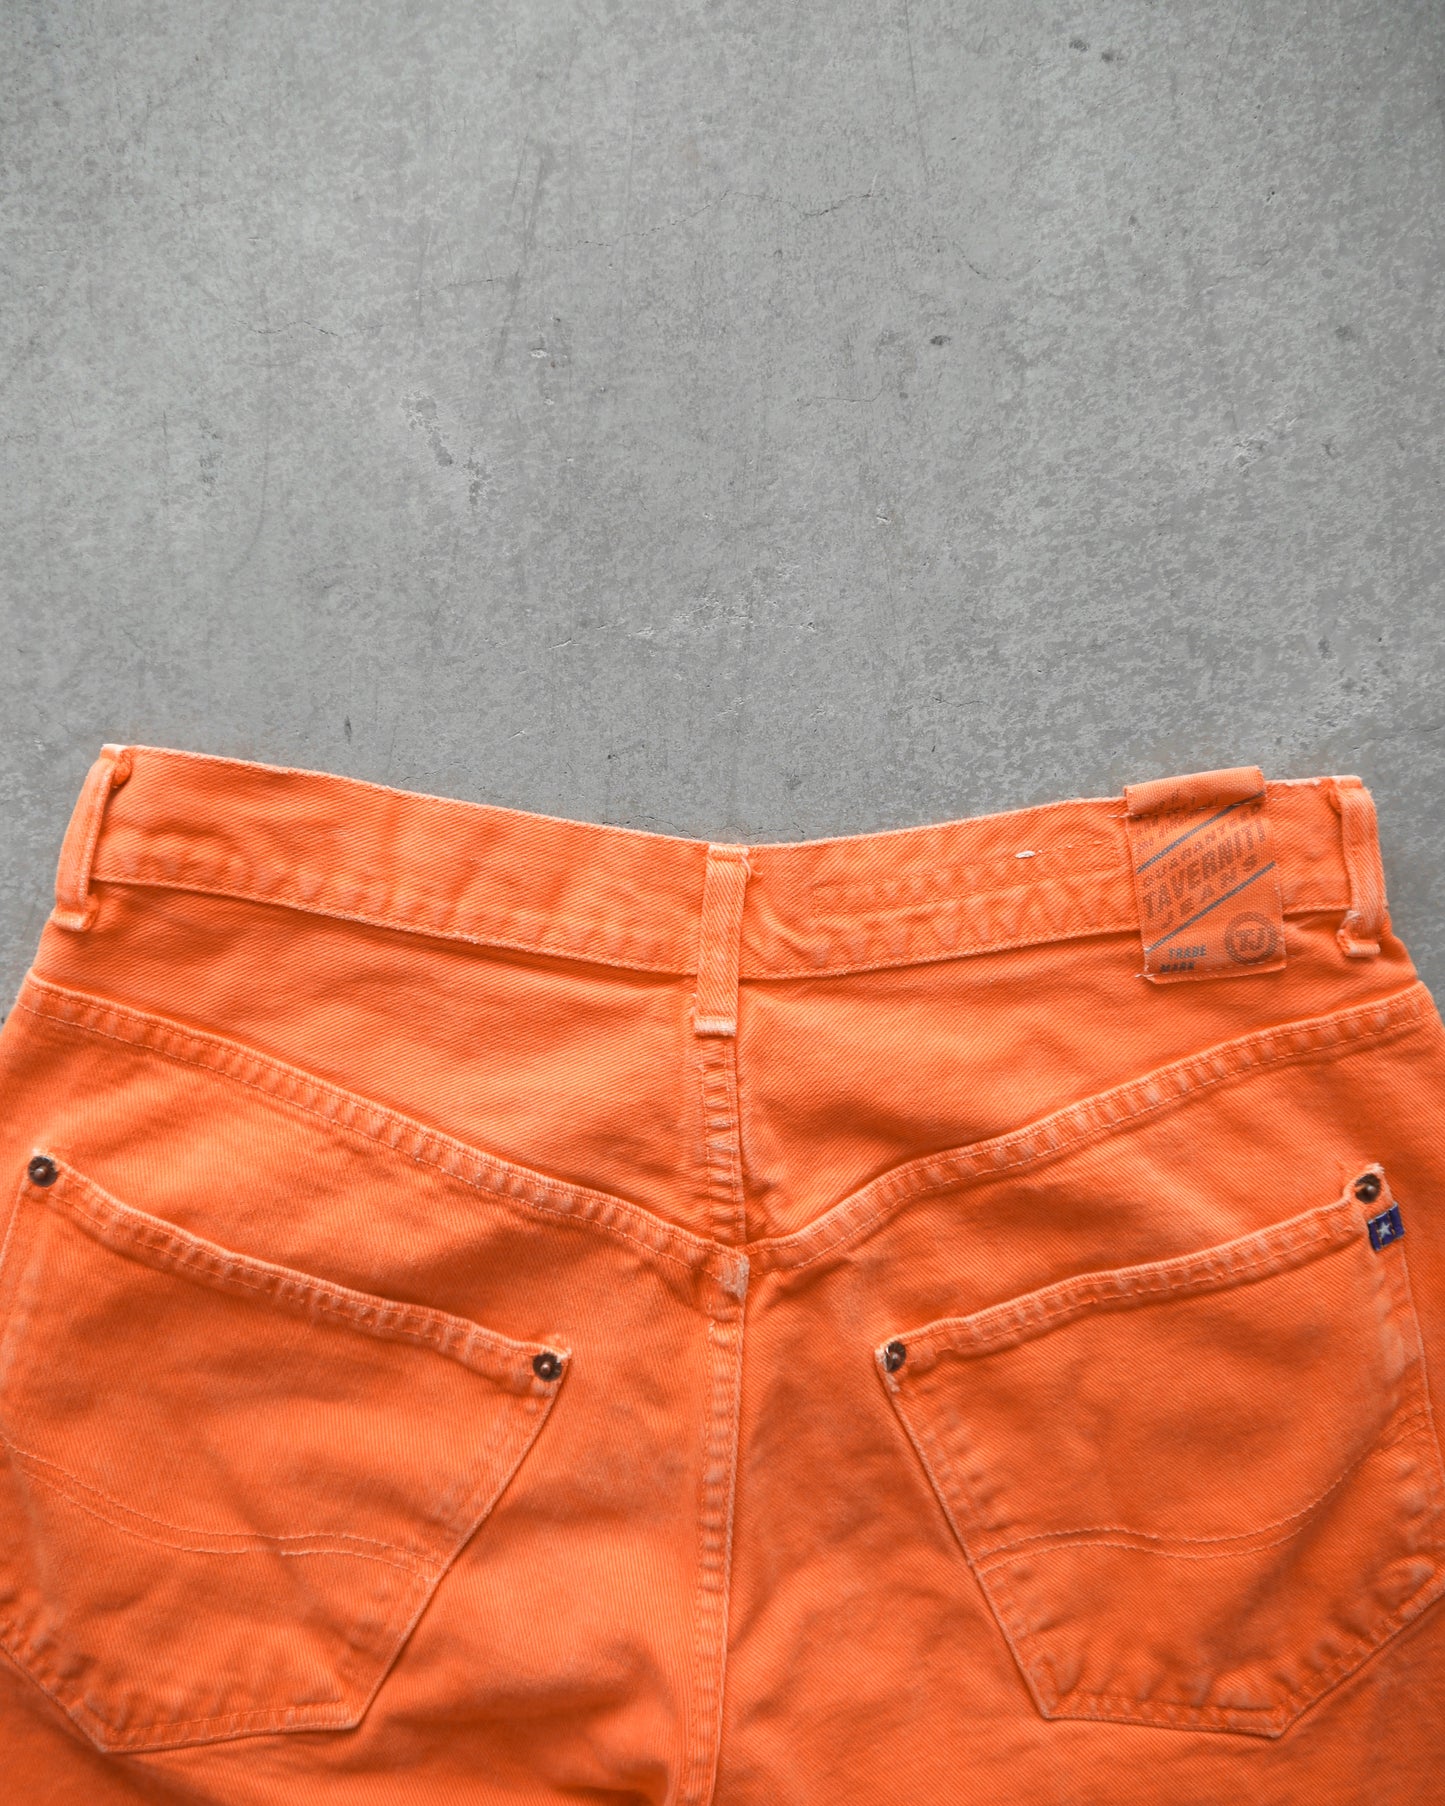 90s Prison Orange Italian Denim Jeans (32x32)